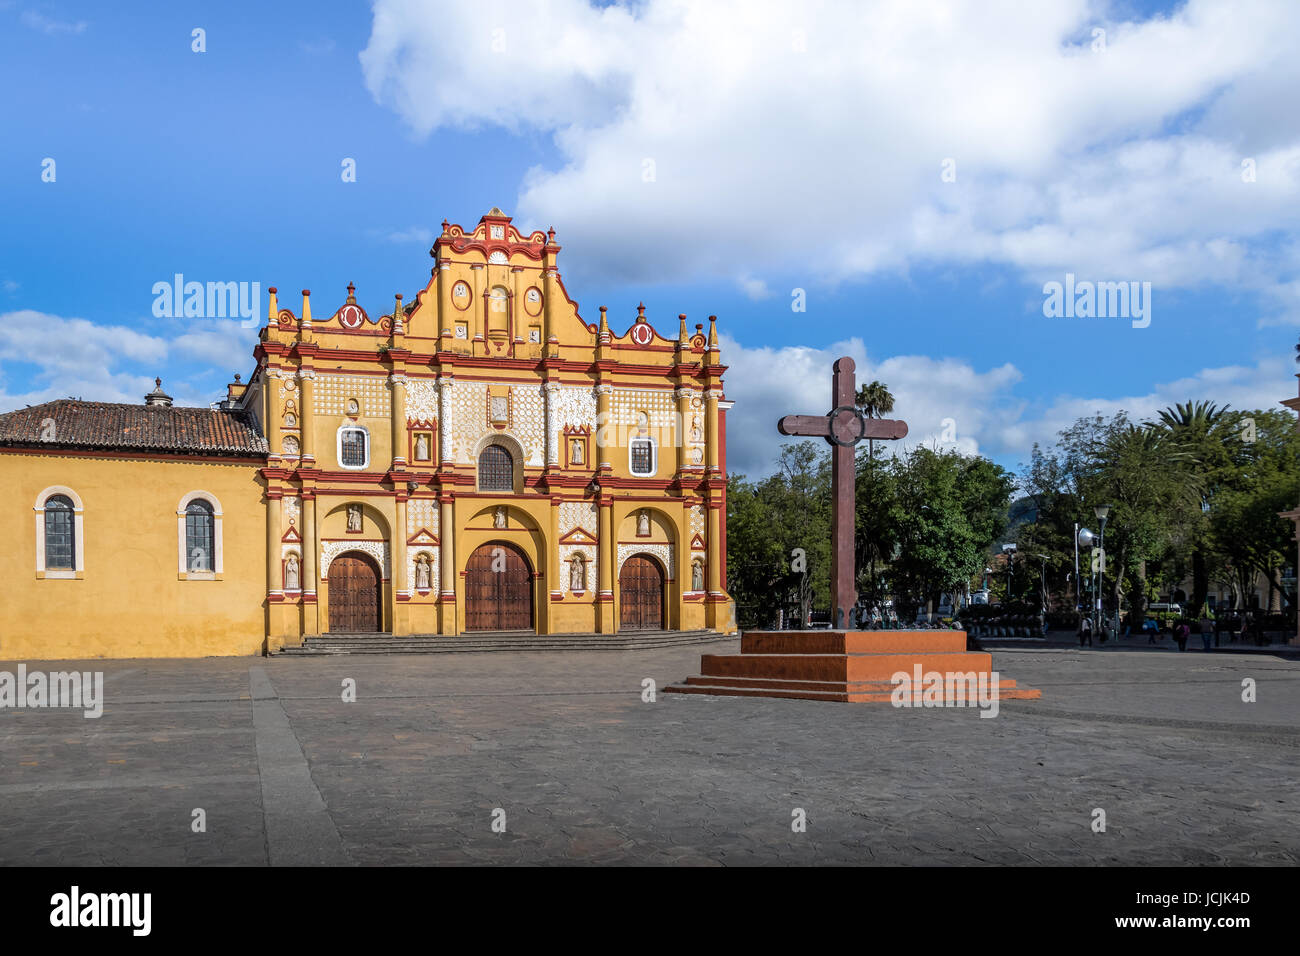 San Cristobal de las Casas Cathedral and Square with the Cross - San Cristobal de las Casas, Chiapas, Mexico Stock Photo